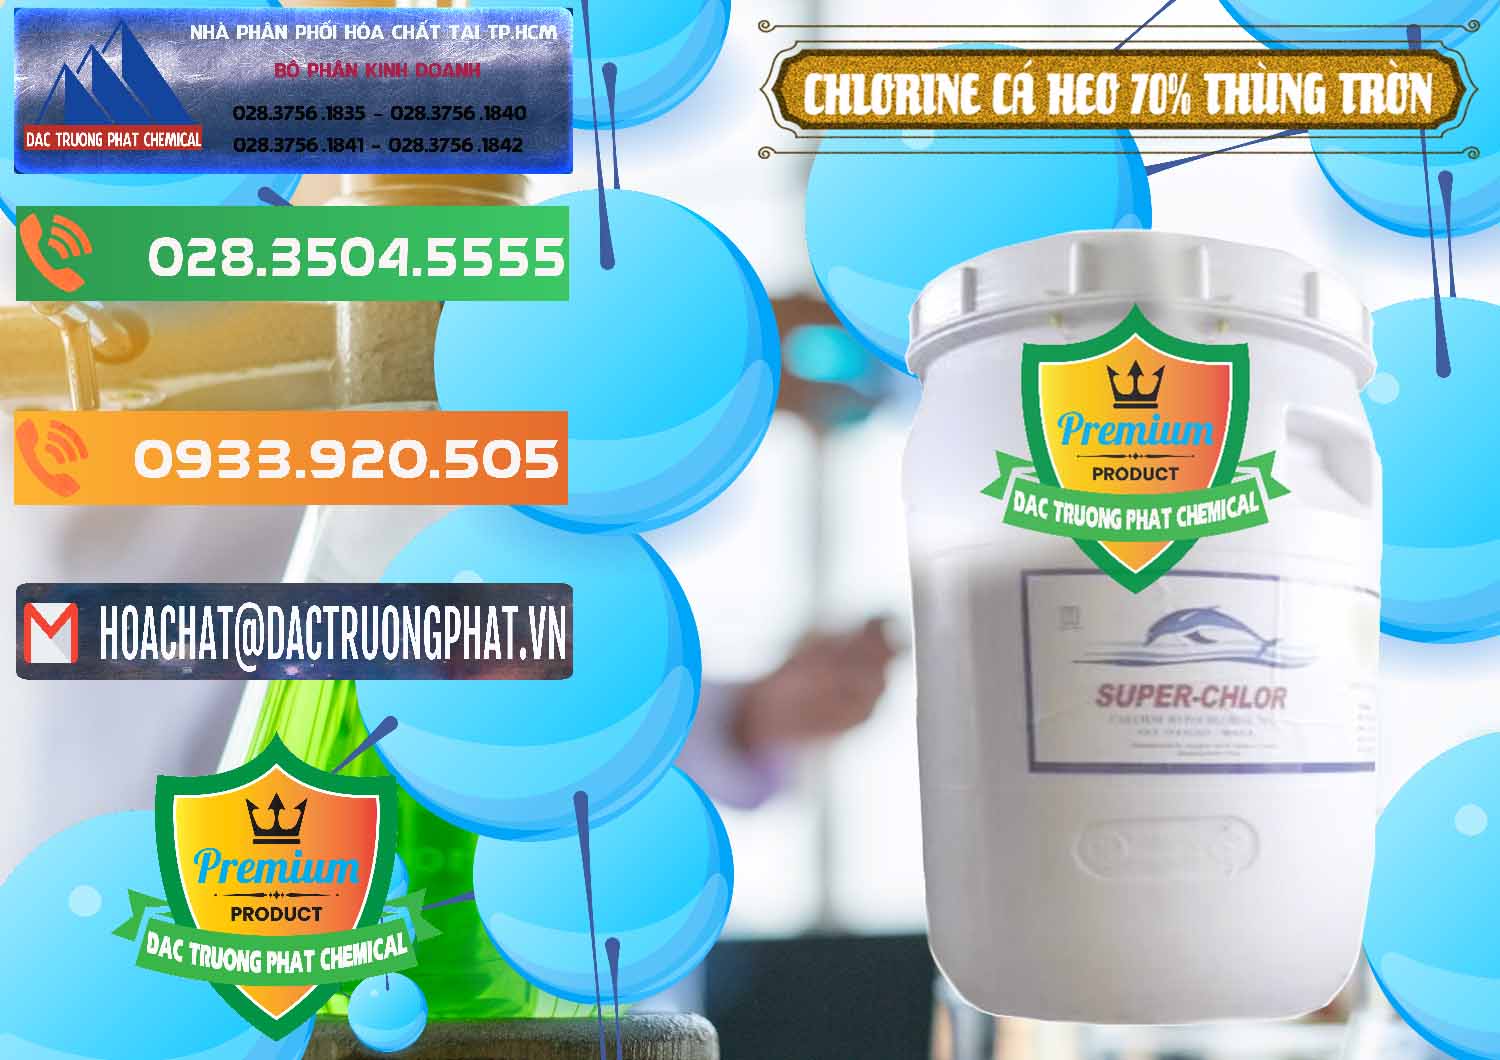 Chuyên bán và cung ứng Clorin - Chlorine Cá Heo 70% Super Chlor Thùng Tròn Nắp Trắng Trung Quốc China - 0239 - Cty chuyên bán _ cung cấp hóa chất tại TP.HCM - hoachatxulynuoc.com.vn